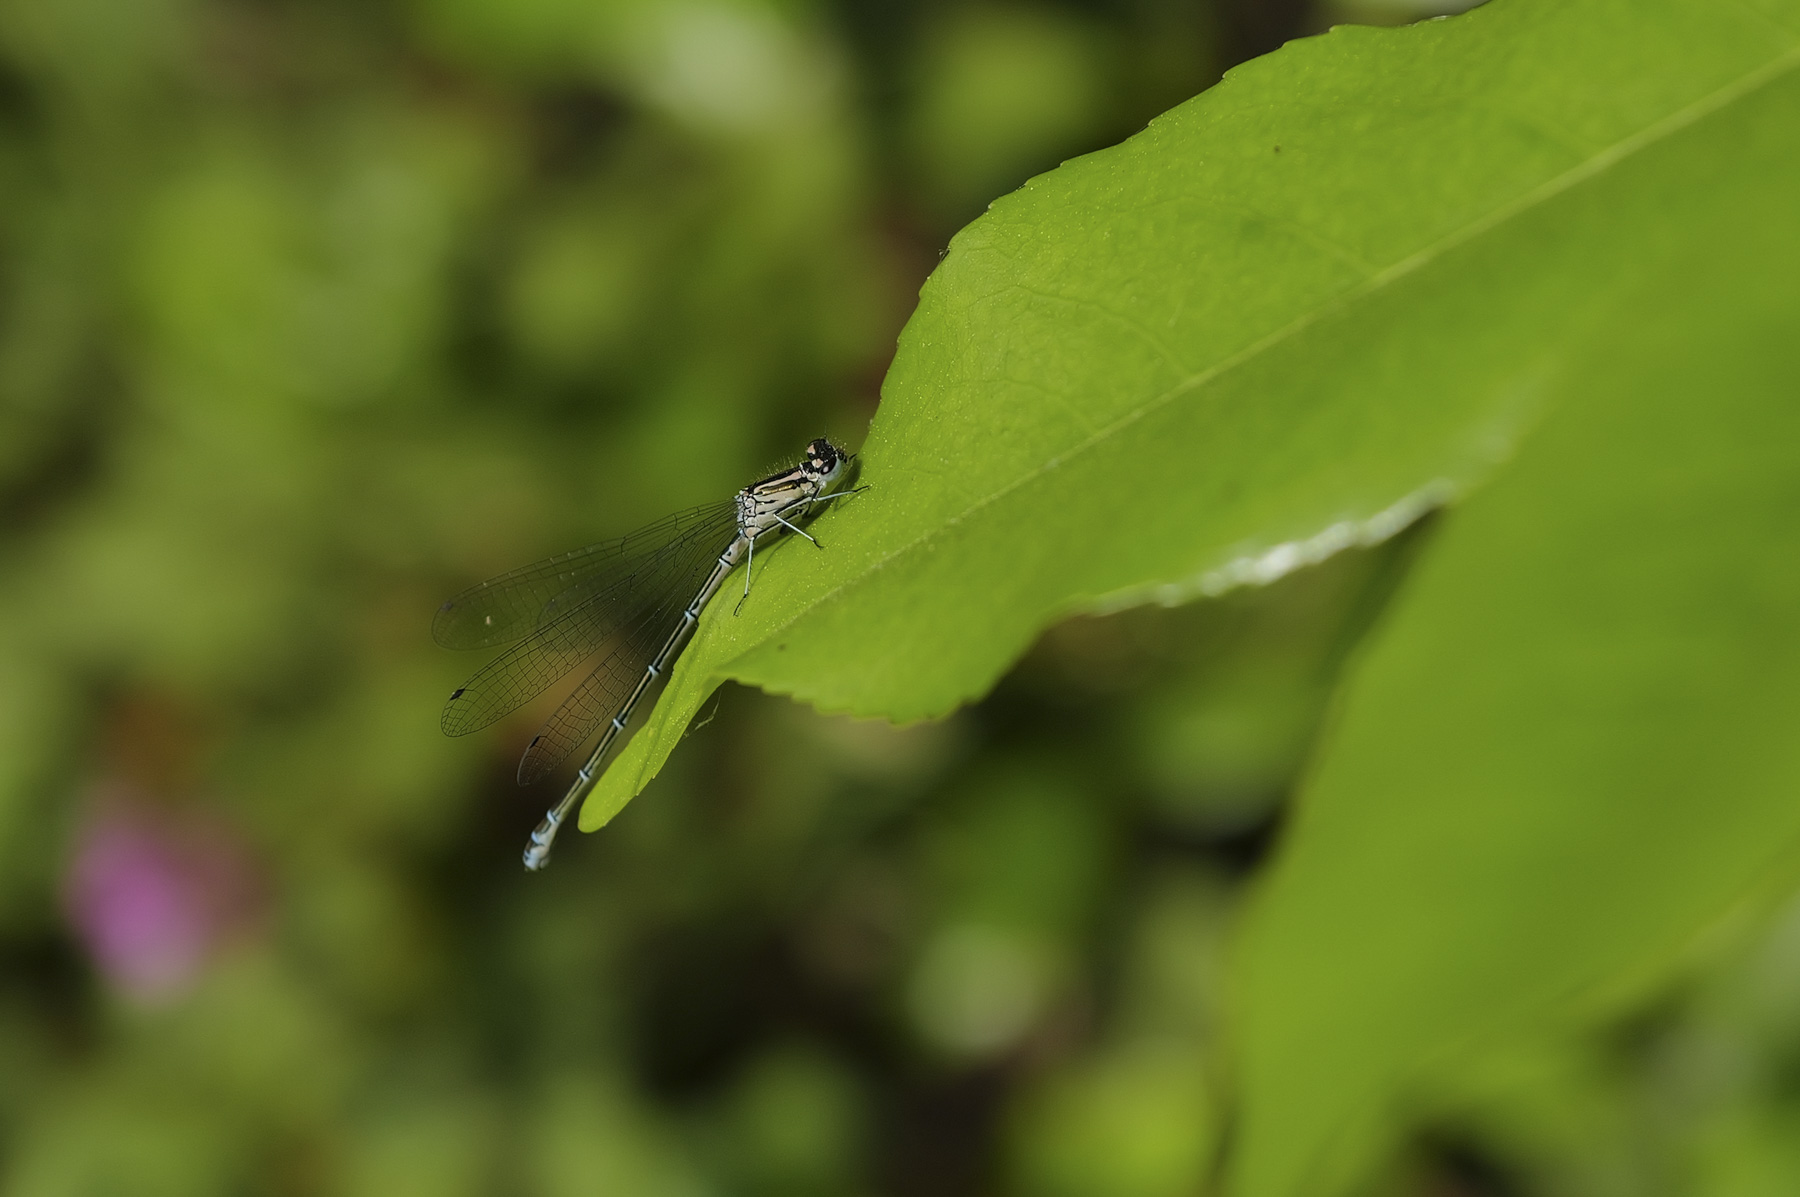 Leica Q3 Closeup of a dragonfly on a leaf